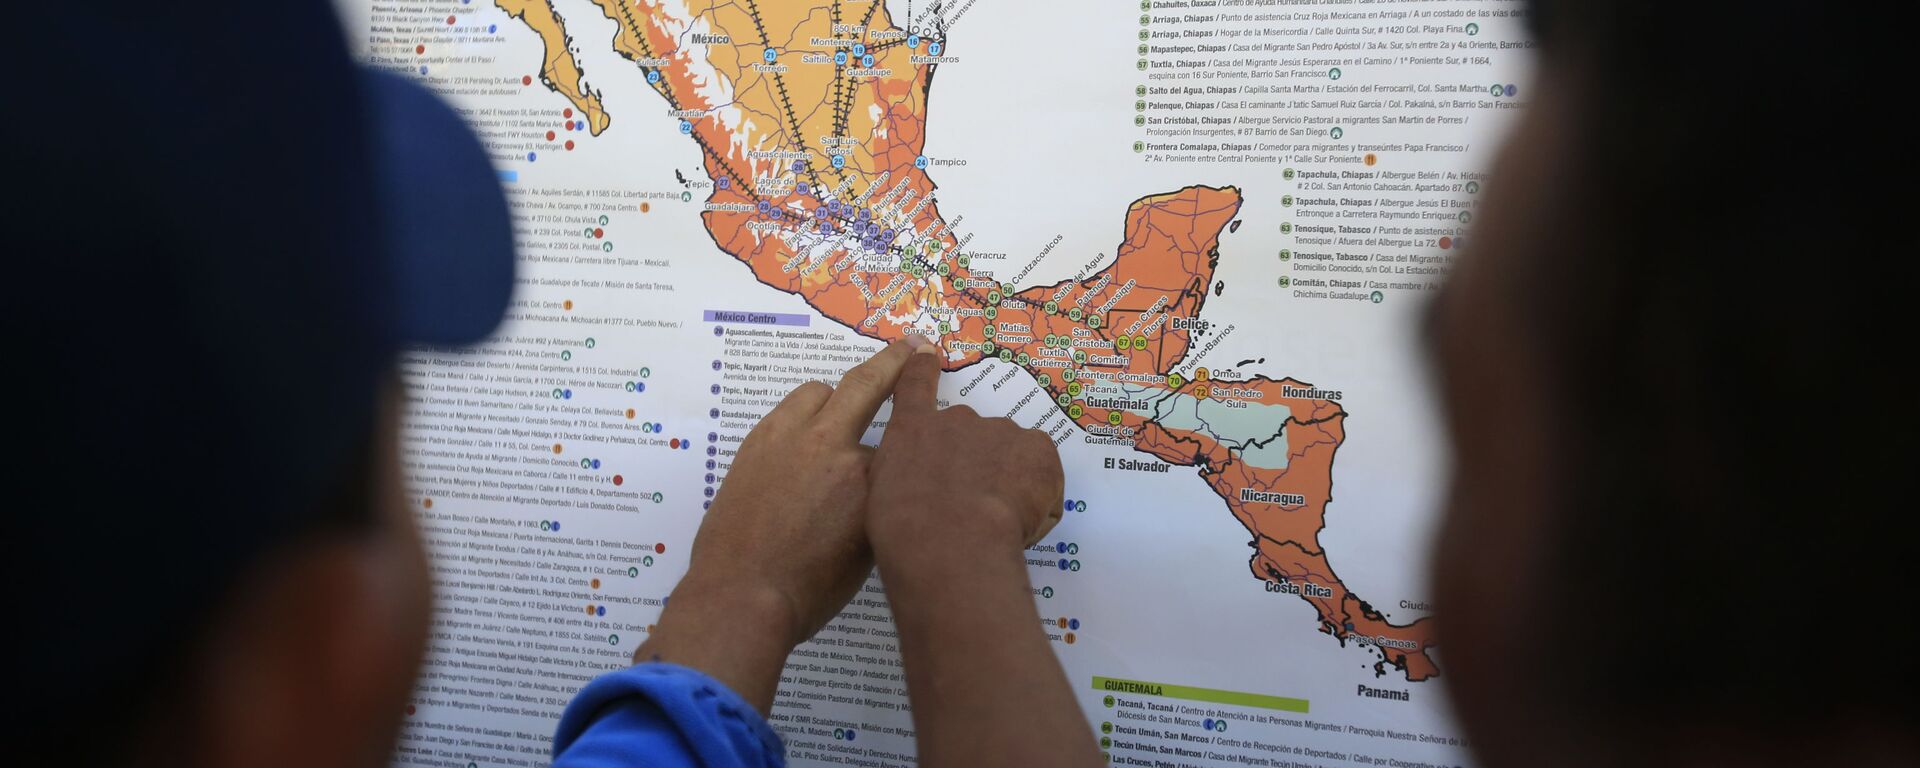 Migrantes centroamericanos planean su recorrido con un mapa en Ciudad de México - Sputnik Mundo, 1920, 14.07.2021